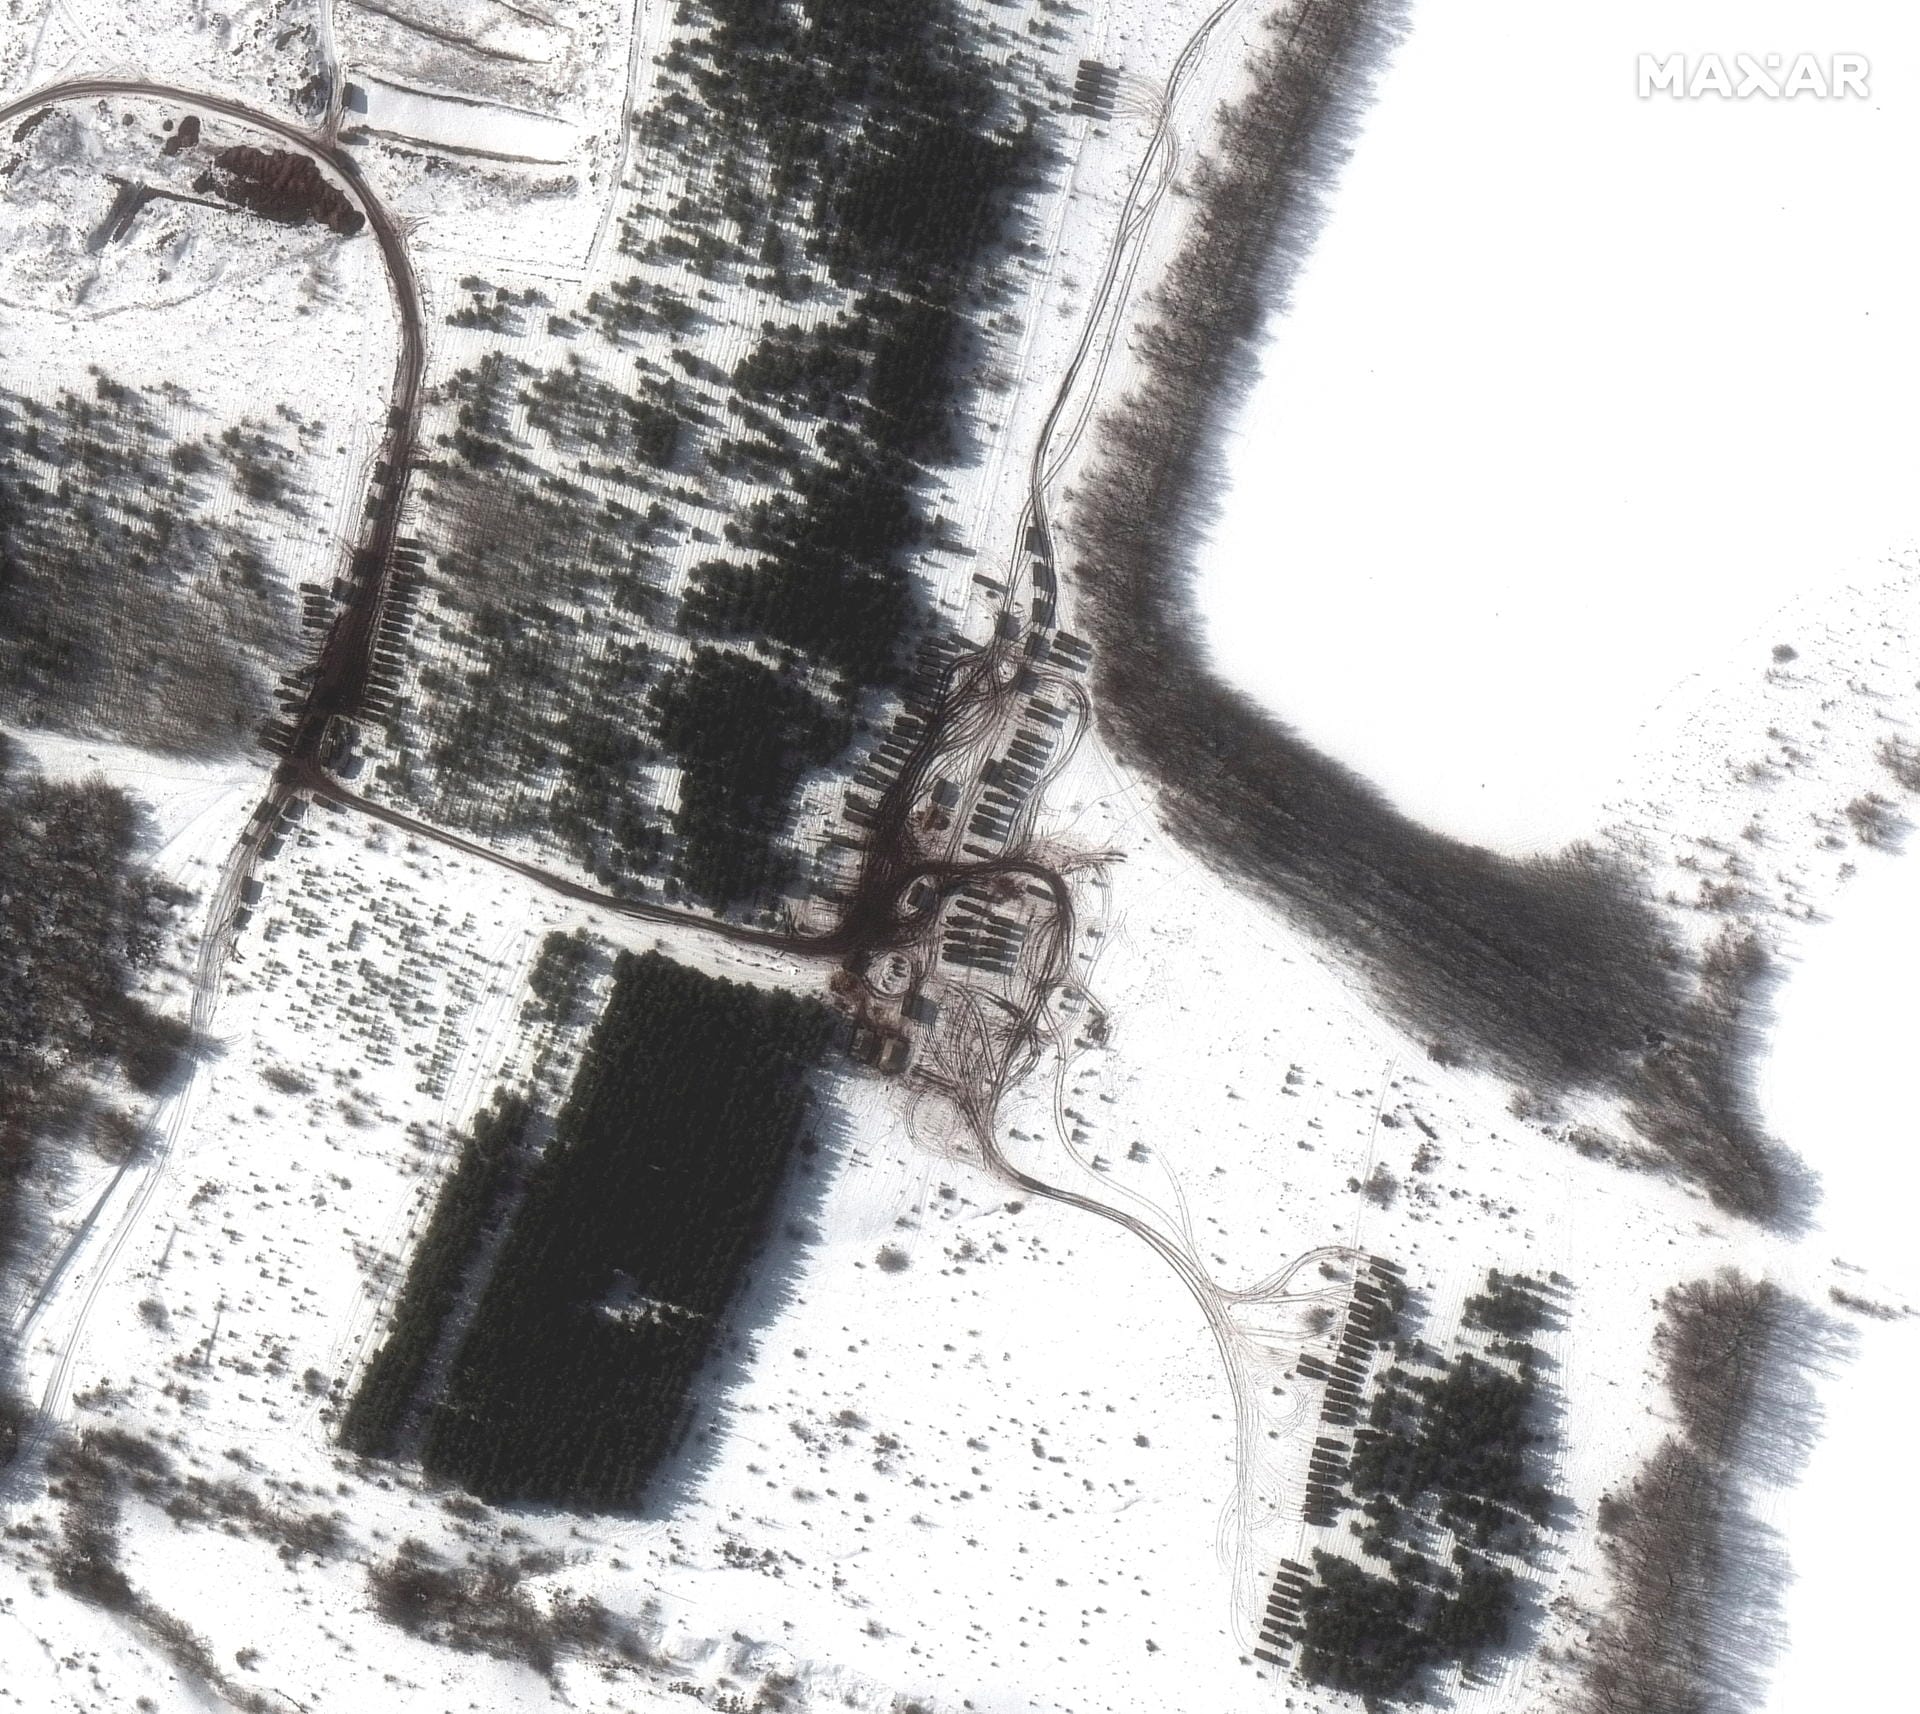 Russlands Militär hat rund 150.000 Soldaten an der ukrainischen Grenze postiert. Satellitenbilder des US-Unternehmens Maxar zeigen nun neue Truppenbewegungen. Hier ein neuer Standort mit Militärgeräten östlich der Stadt Waluiki.